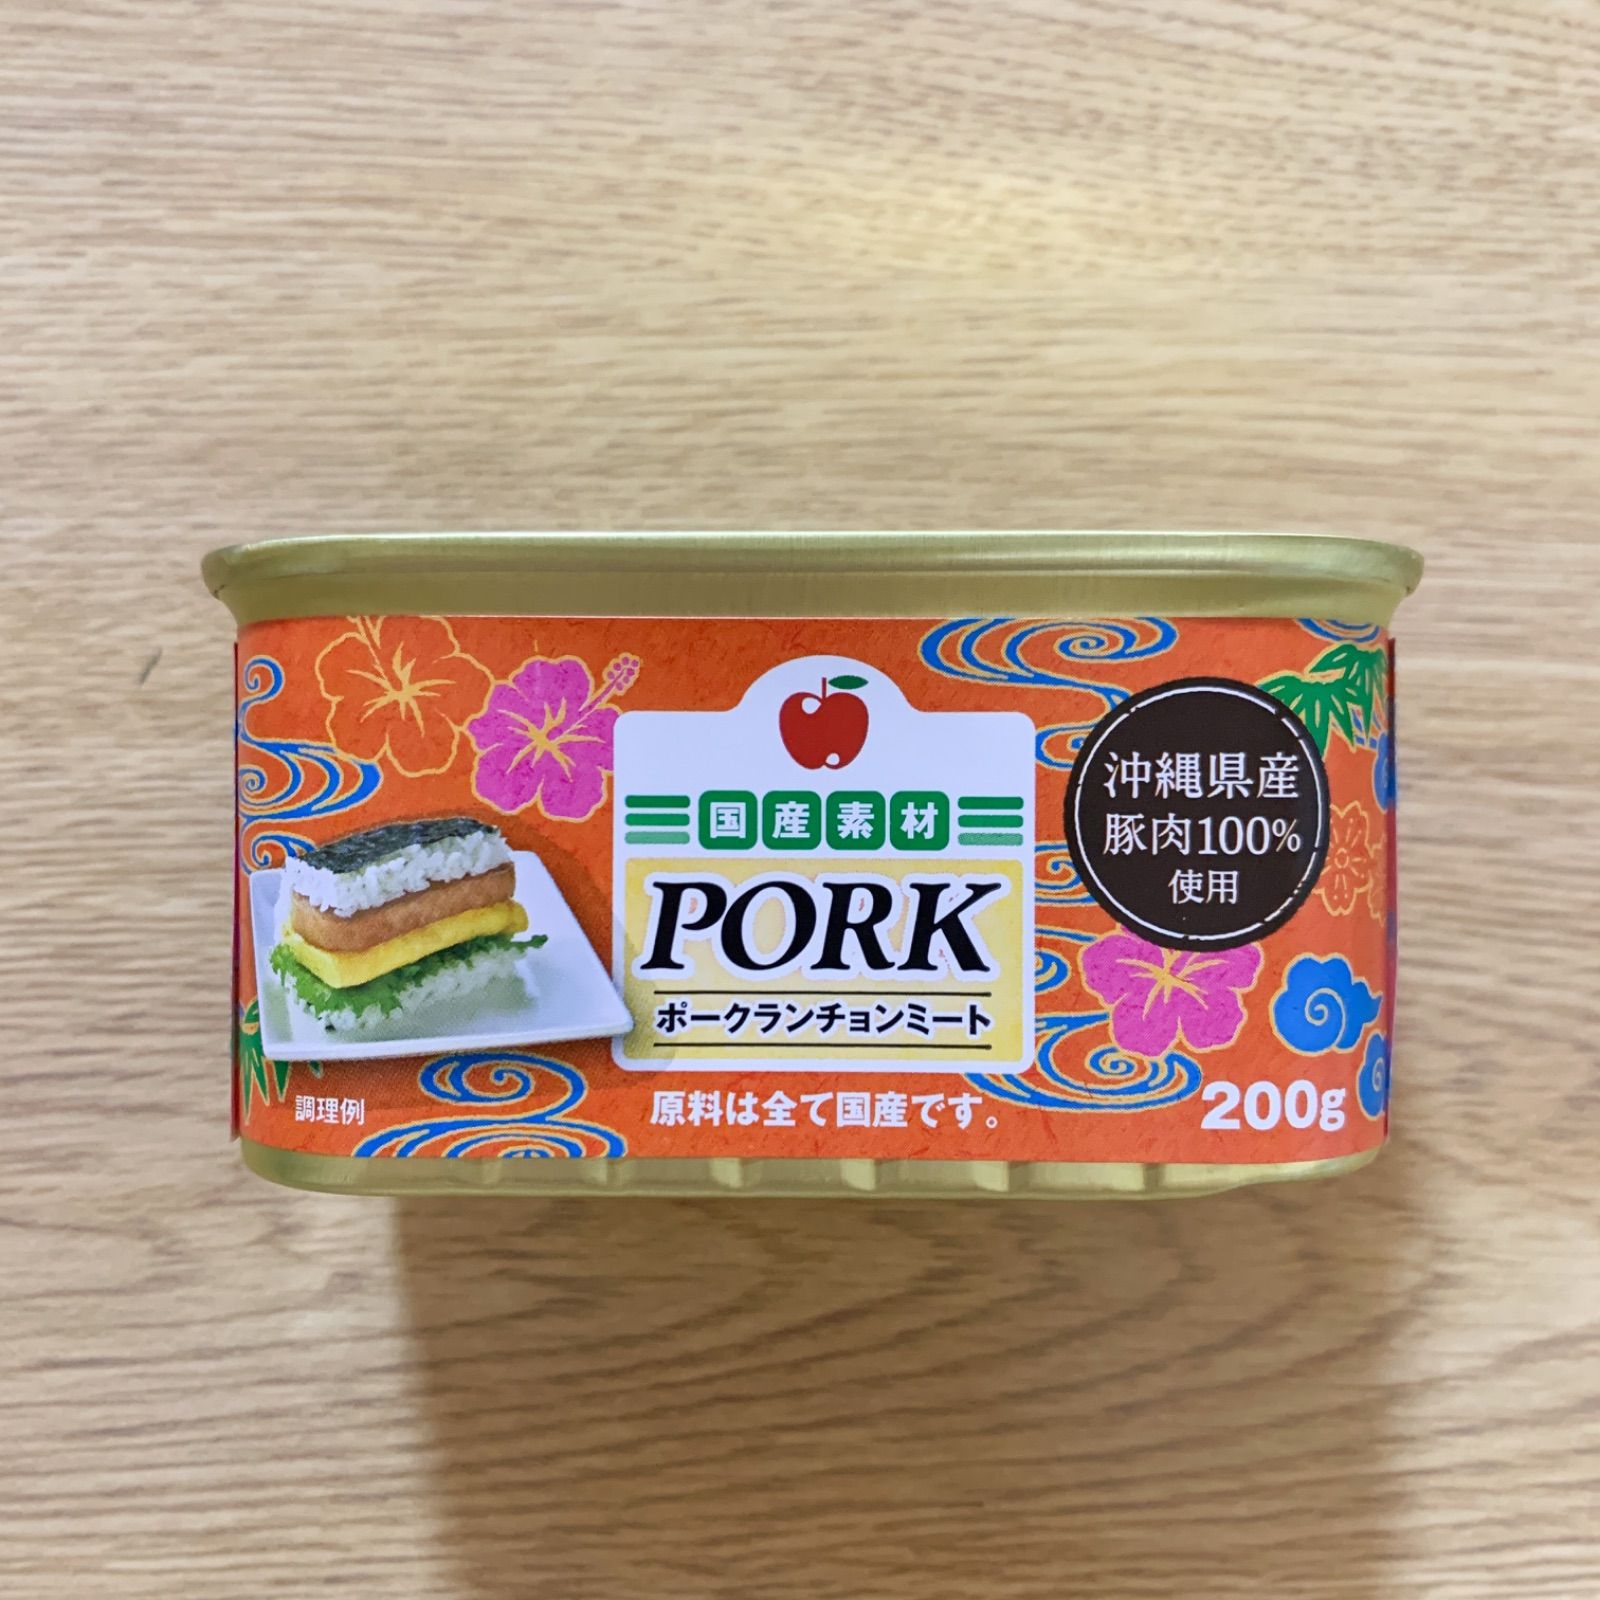 品質重視コープ沖縄ポークランチョンミート 肉類(加工食品)